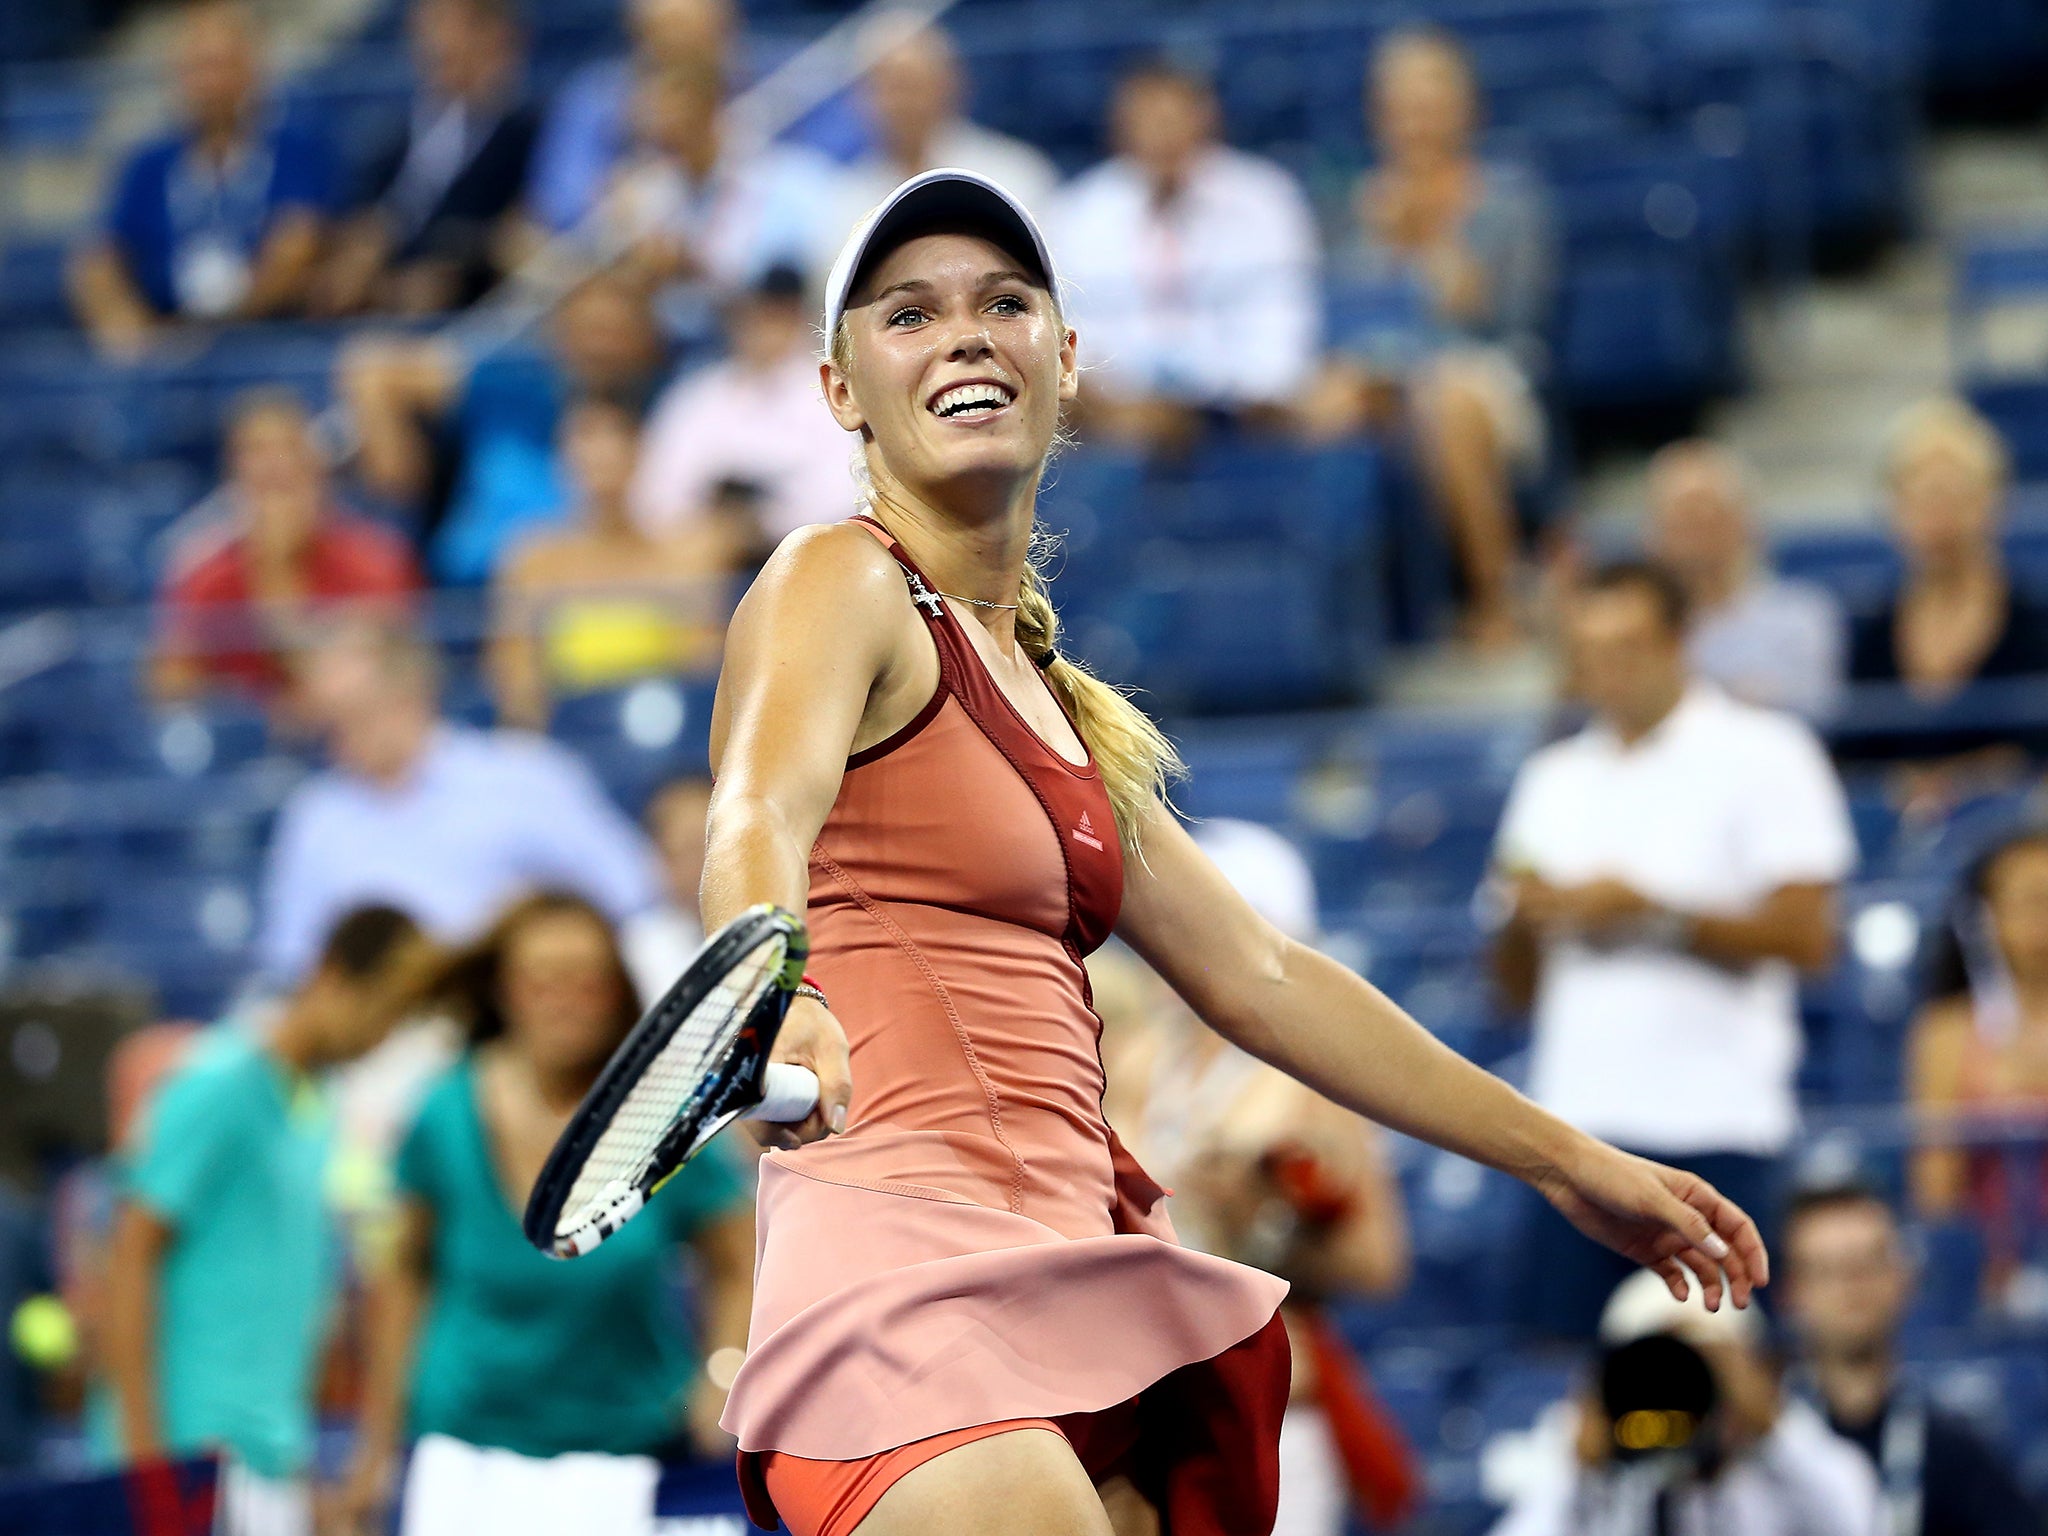 Us Open 2014 How Caroline Wozniacki Bounced Back To First Grand Slam Semi Final In Three Years